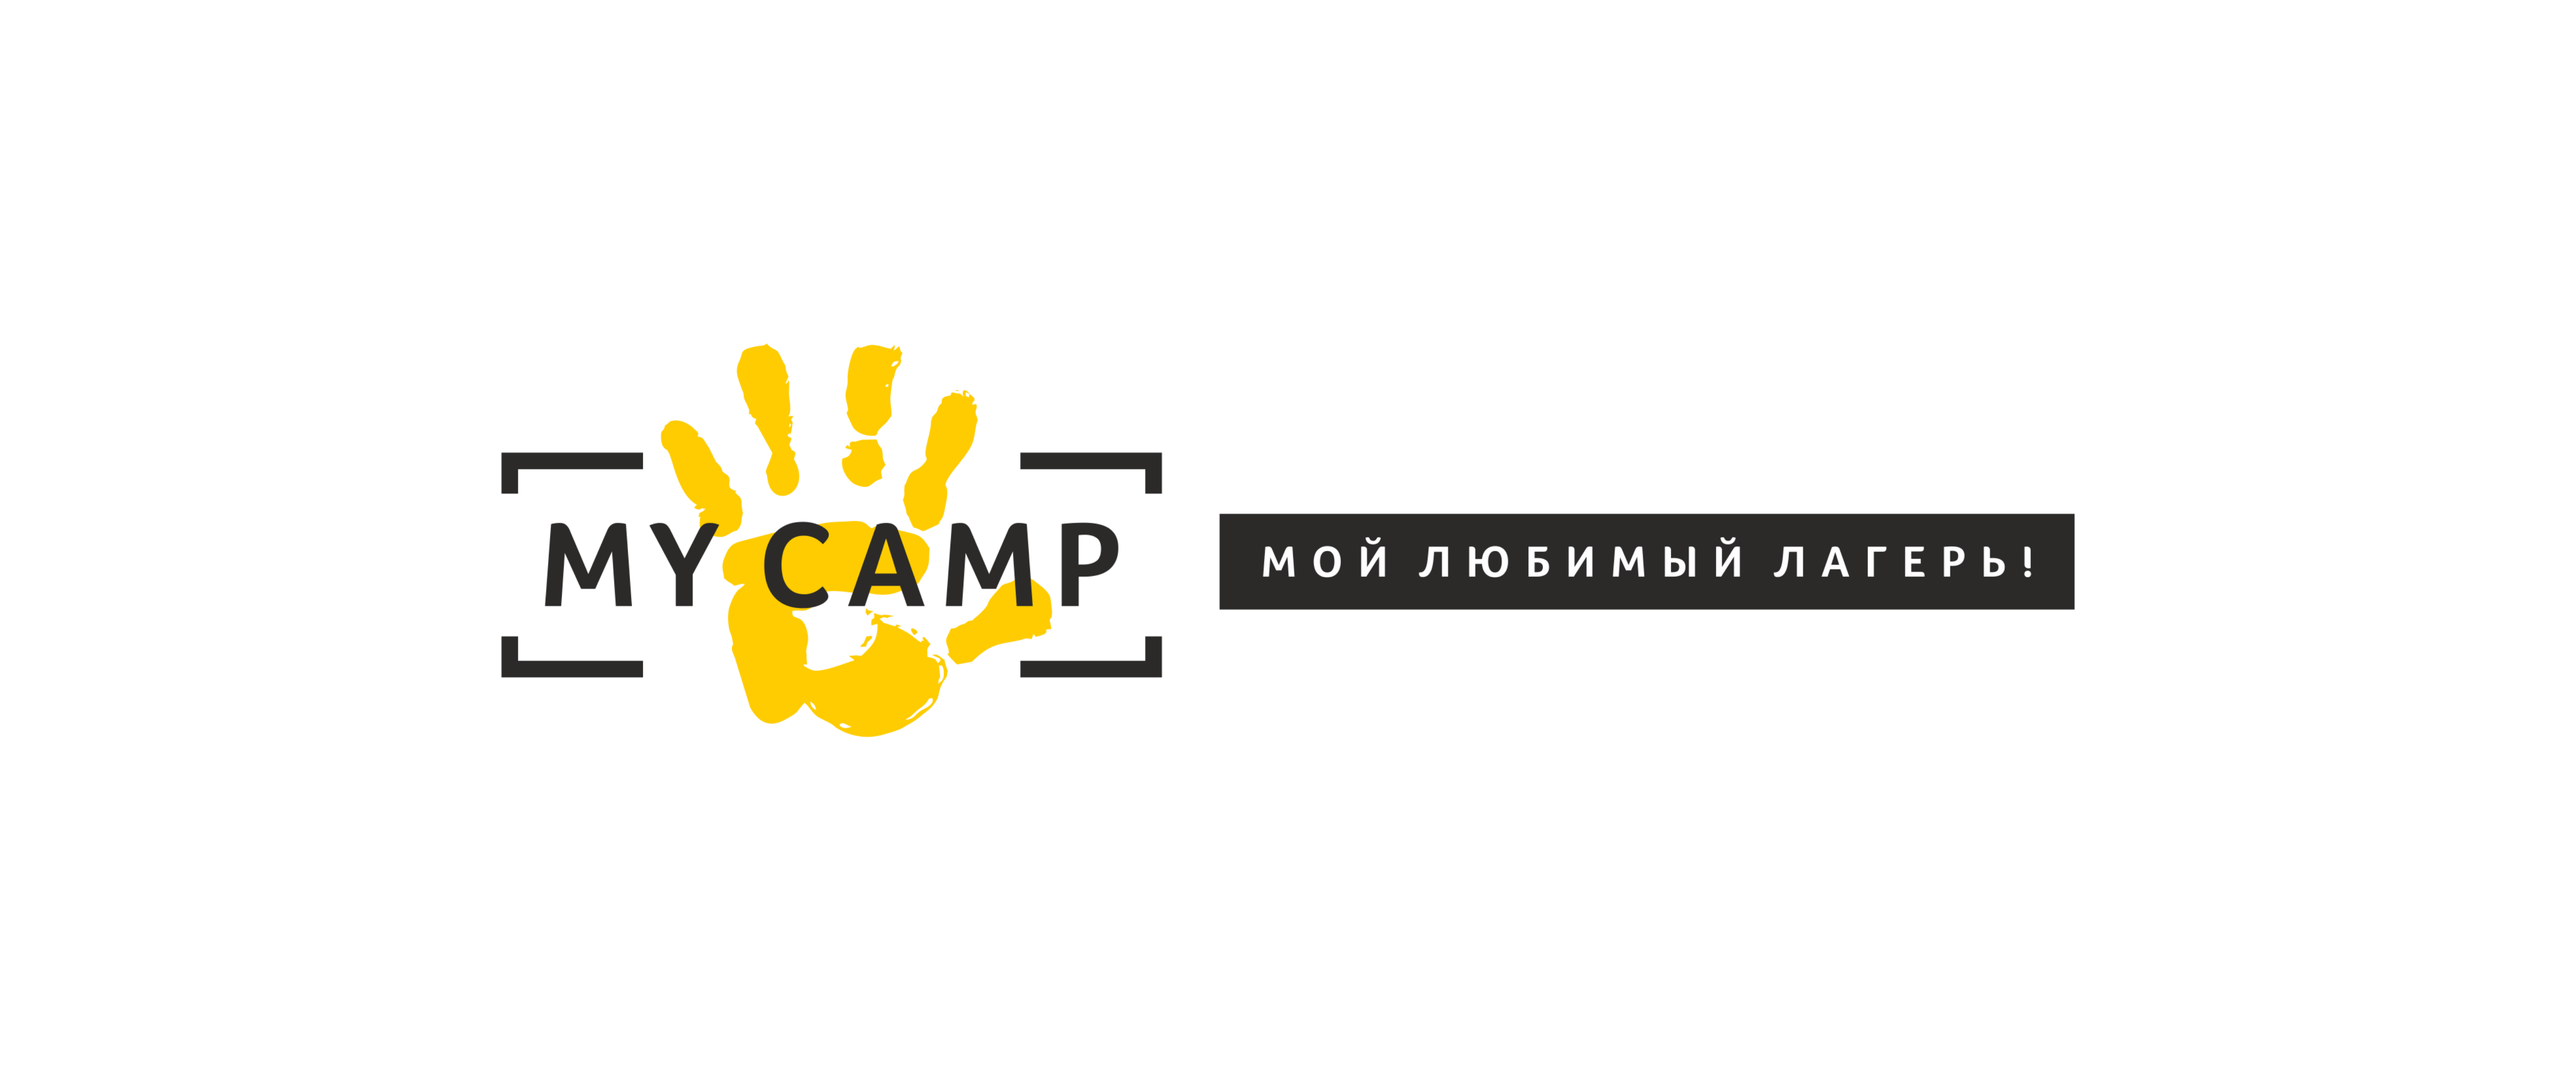 Активные детские лагеря My Camp